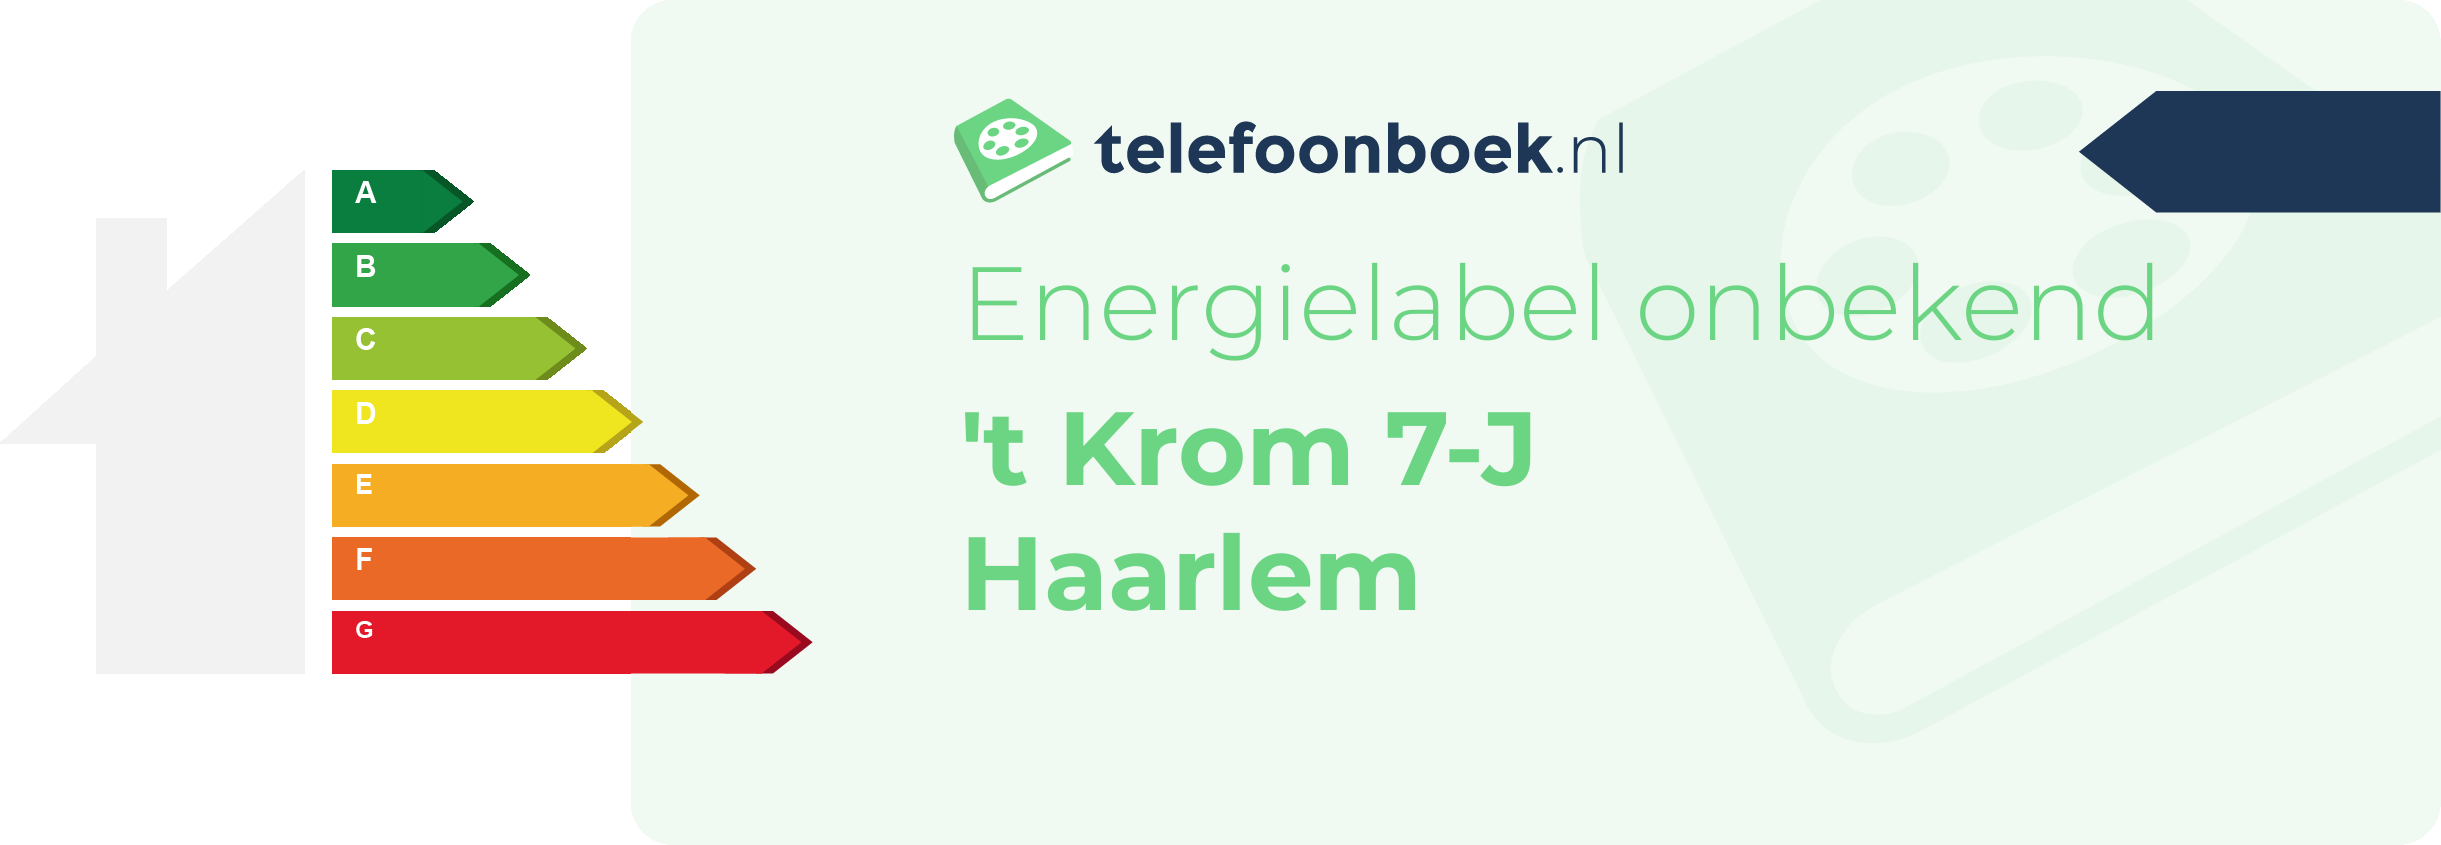 Energielabel 't Krom 7-J Haarlem